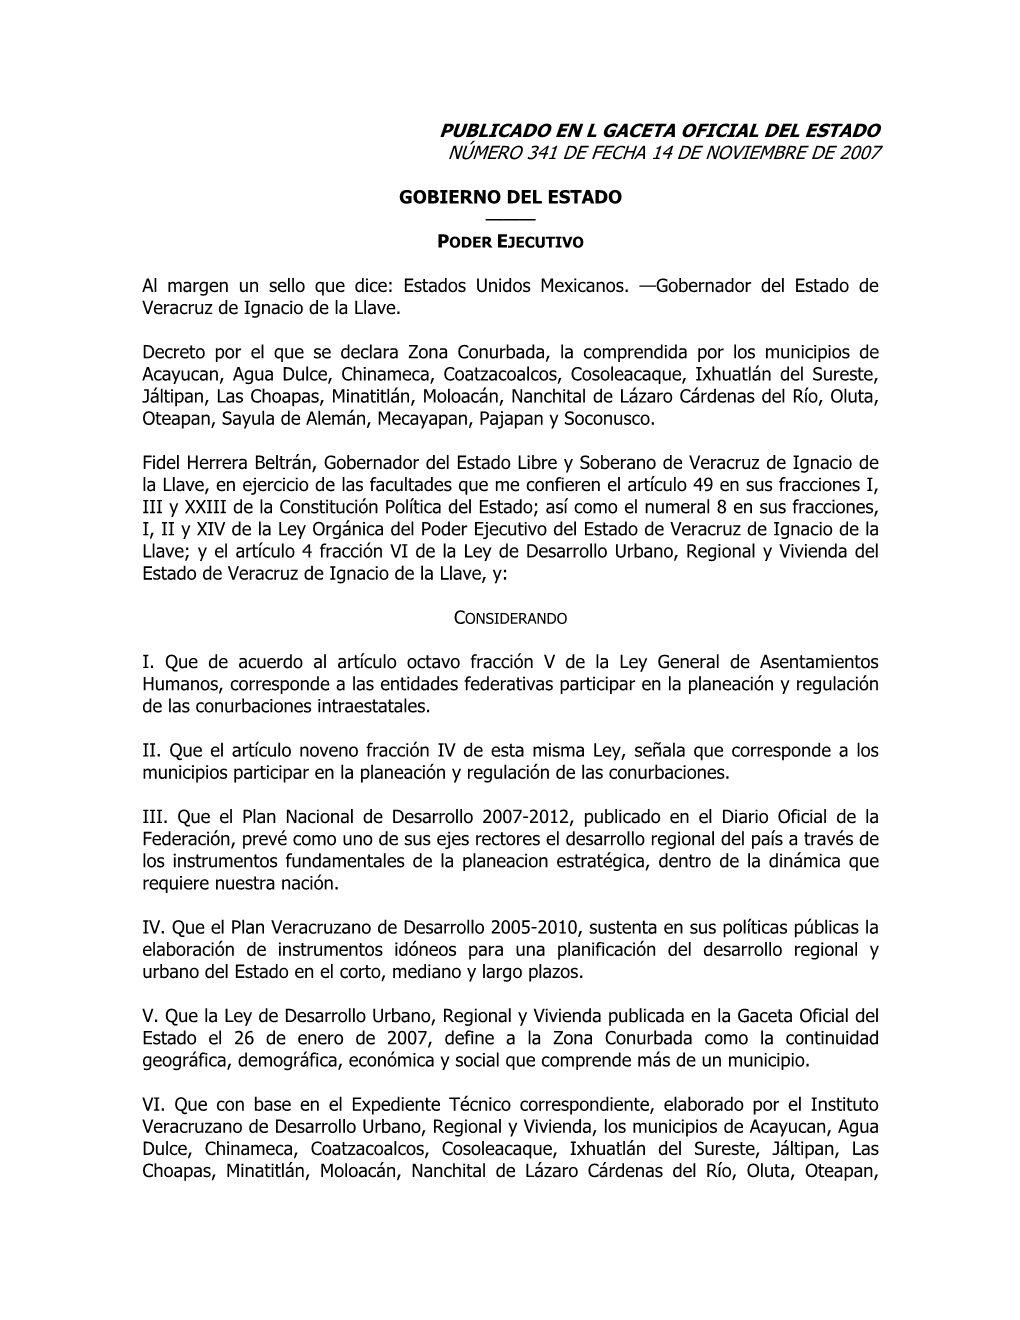 232 Decreto Declara Zona Conurbada, Acayucan, Agua